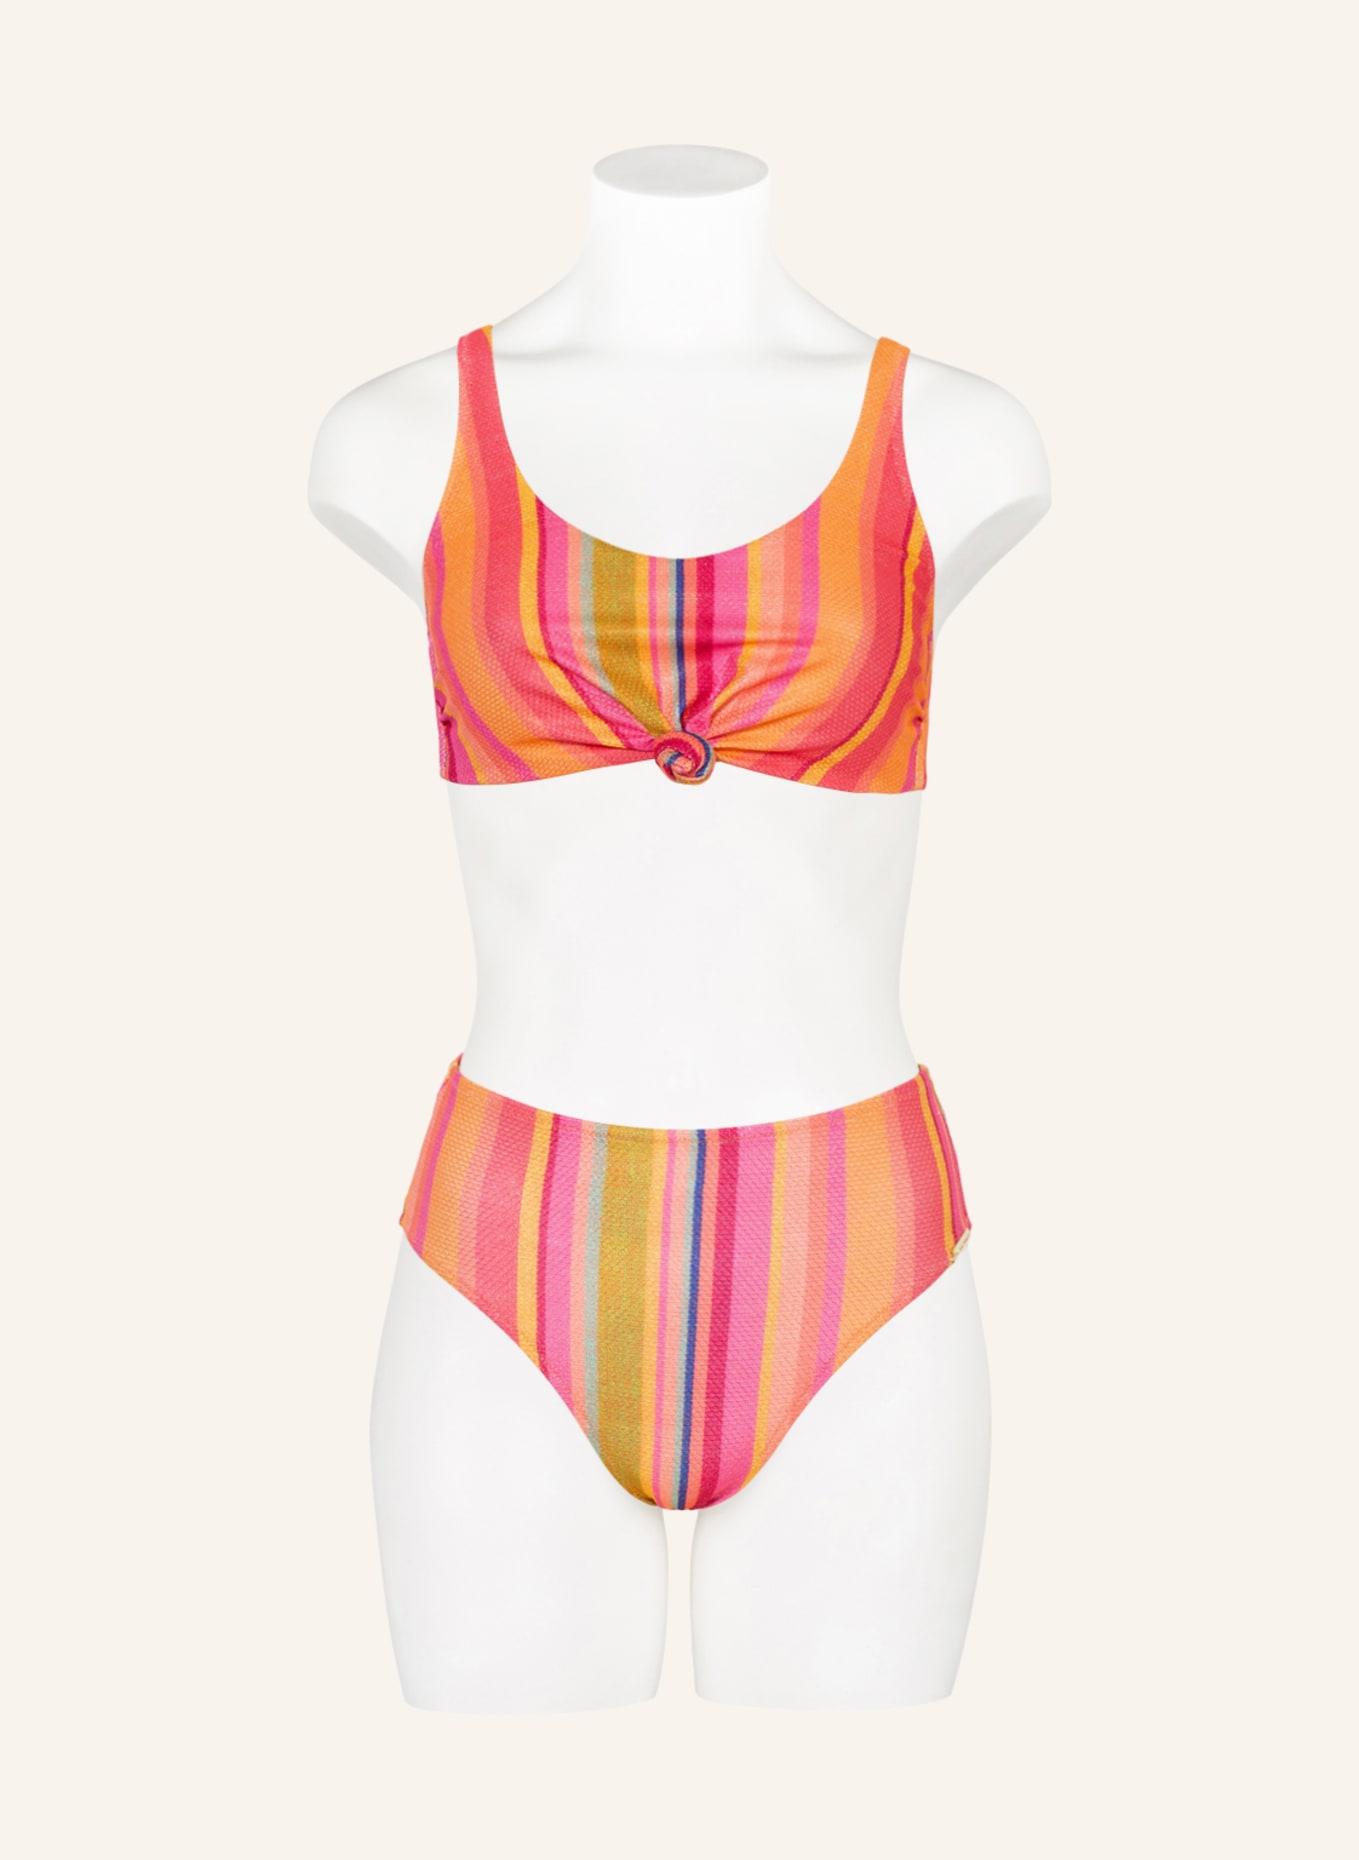 watercult Bustier-Bikini-Top DOPAMINE STRIPE in pink hellrot/ orange